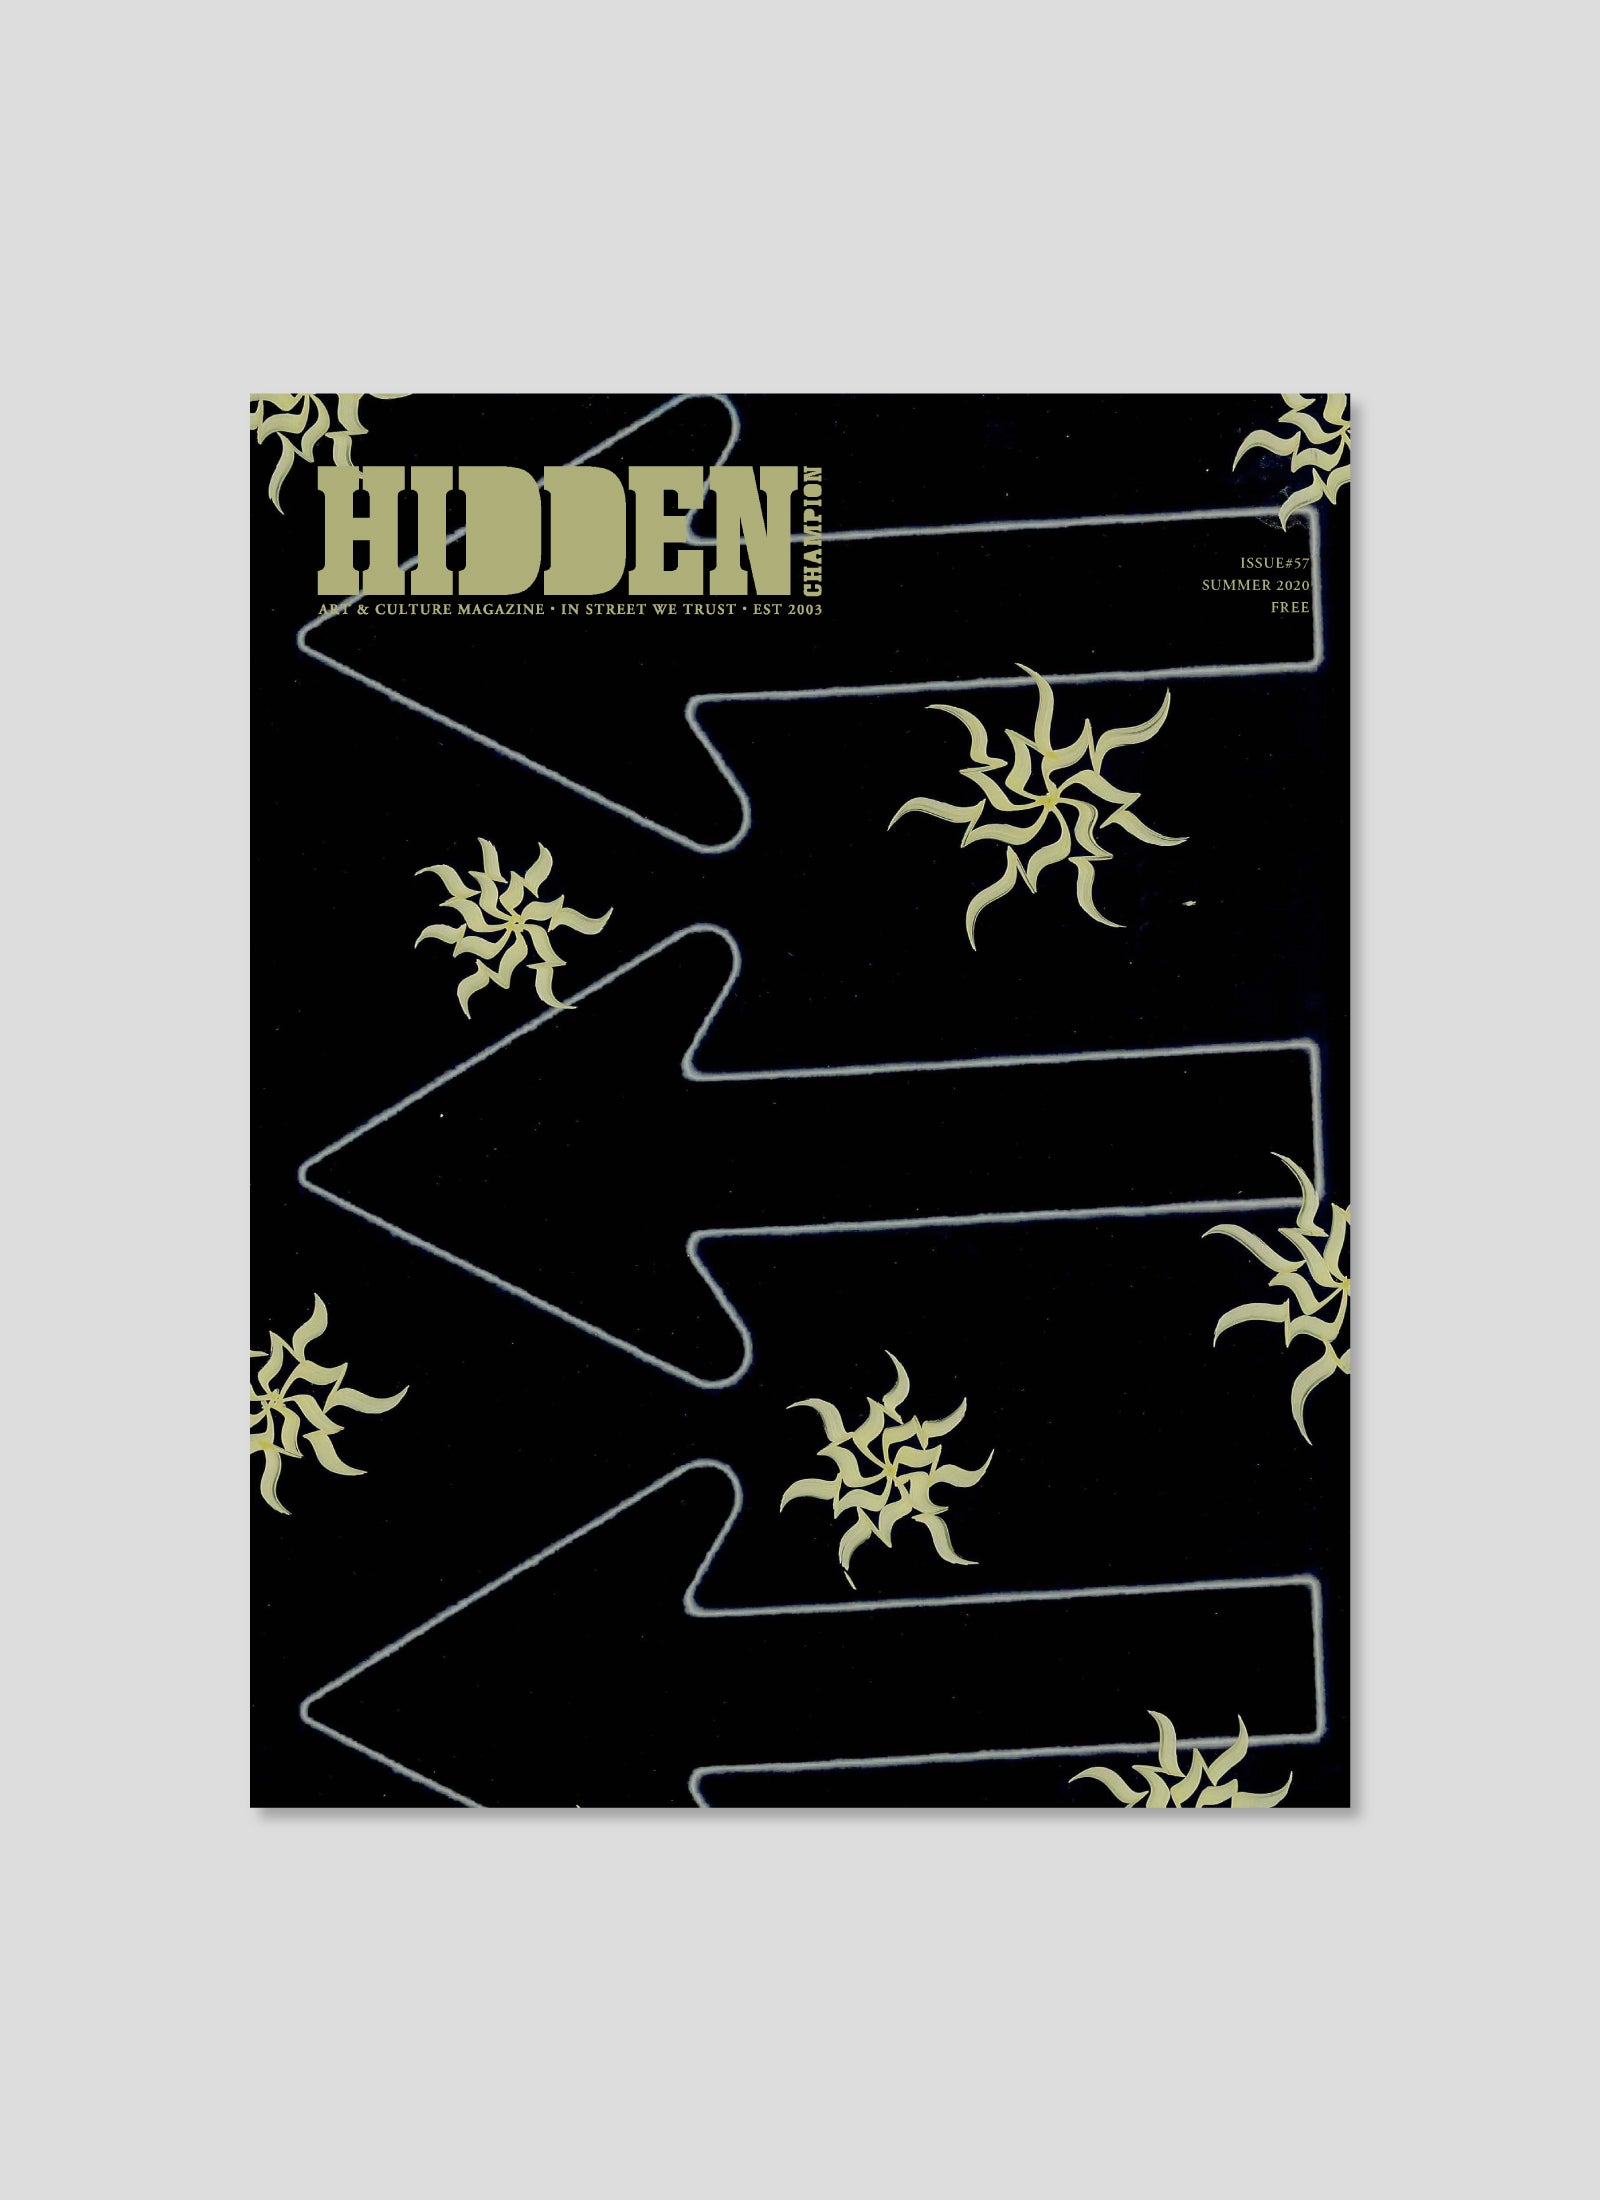 HIDDEN CHAMPION Issue#57